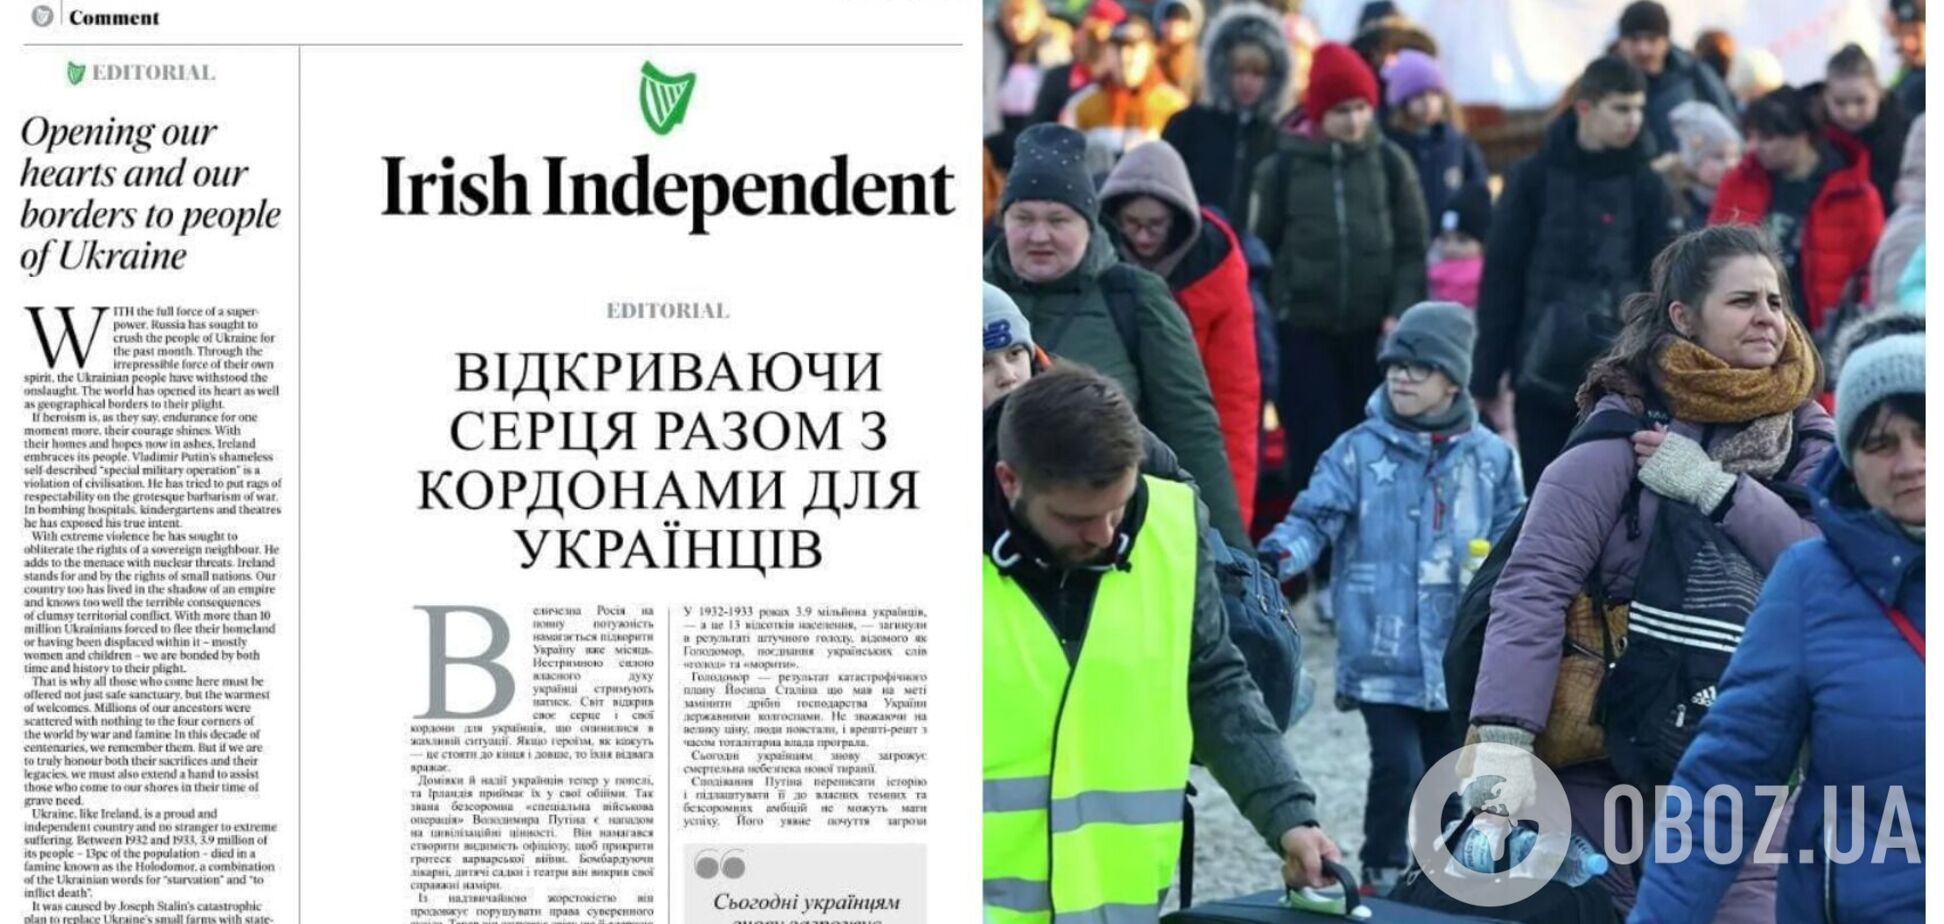 Самая популярная газета Ирландии Irish Independent опубликовала главную статью на украинском языке. Фото